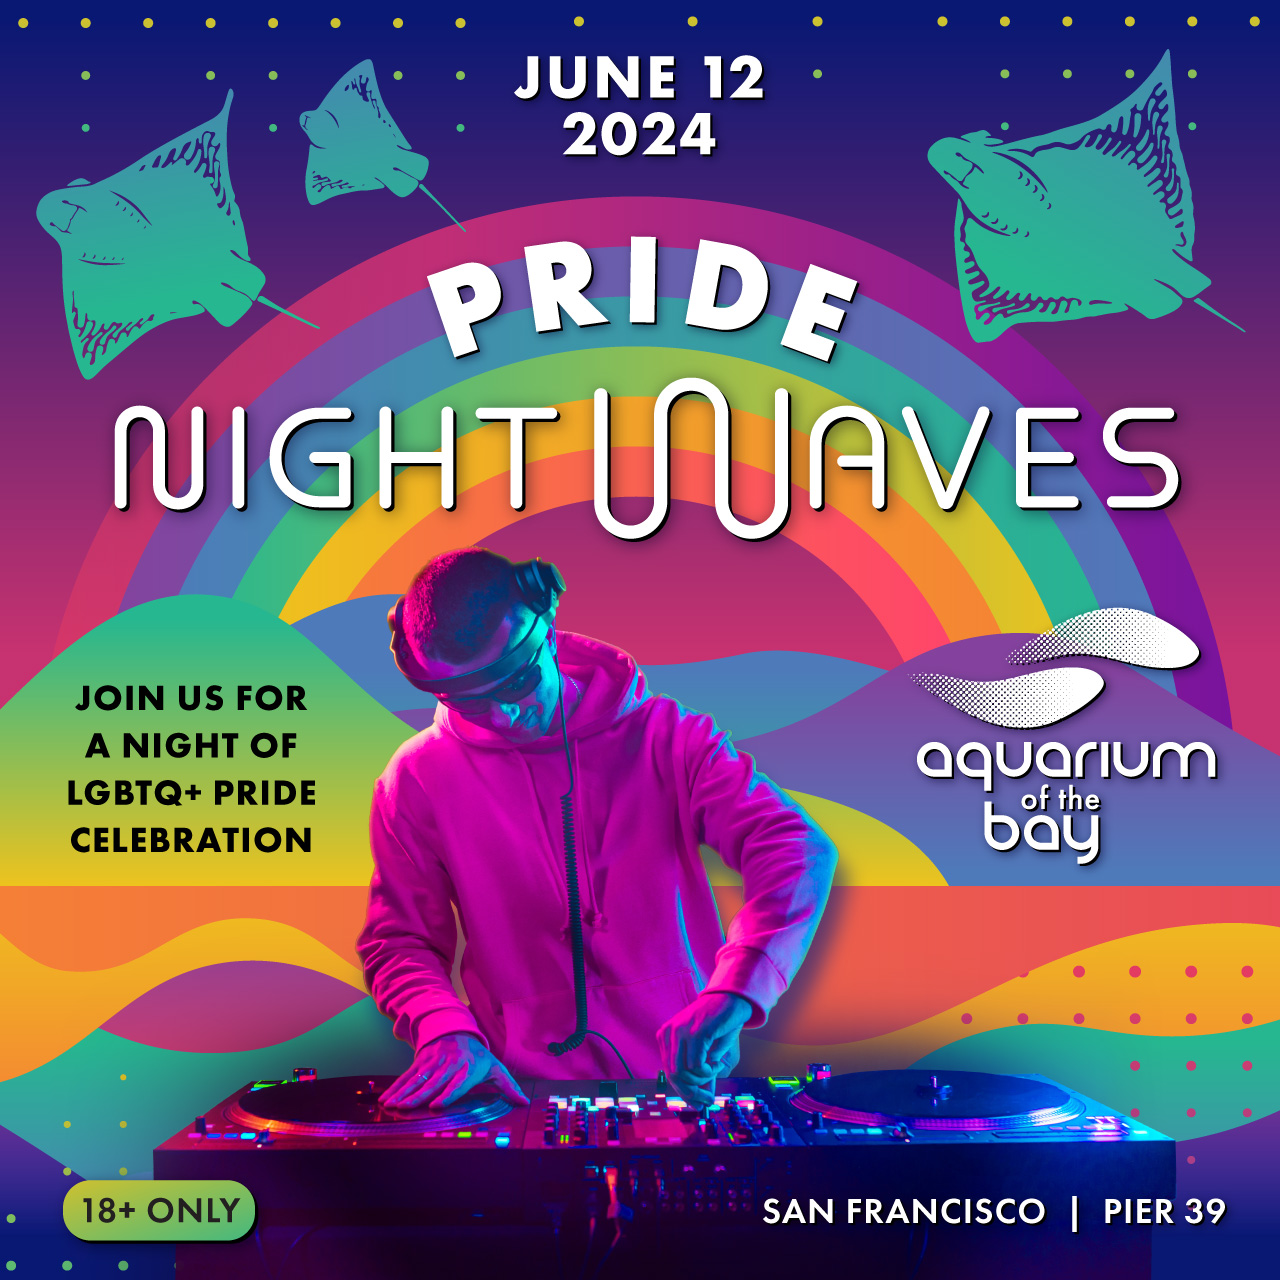 Pride Night Waves